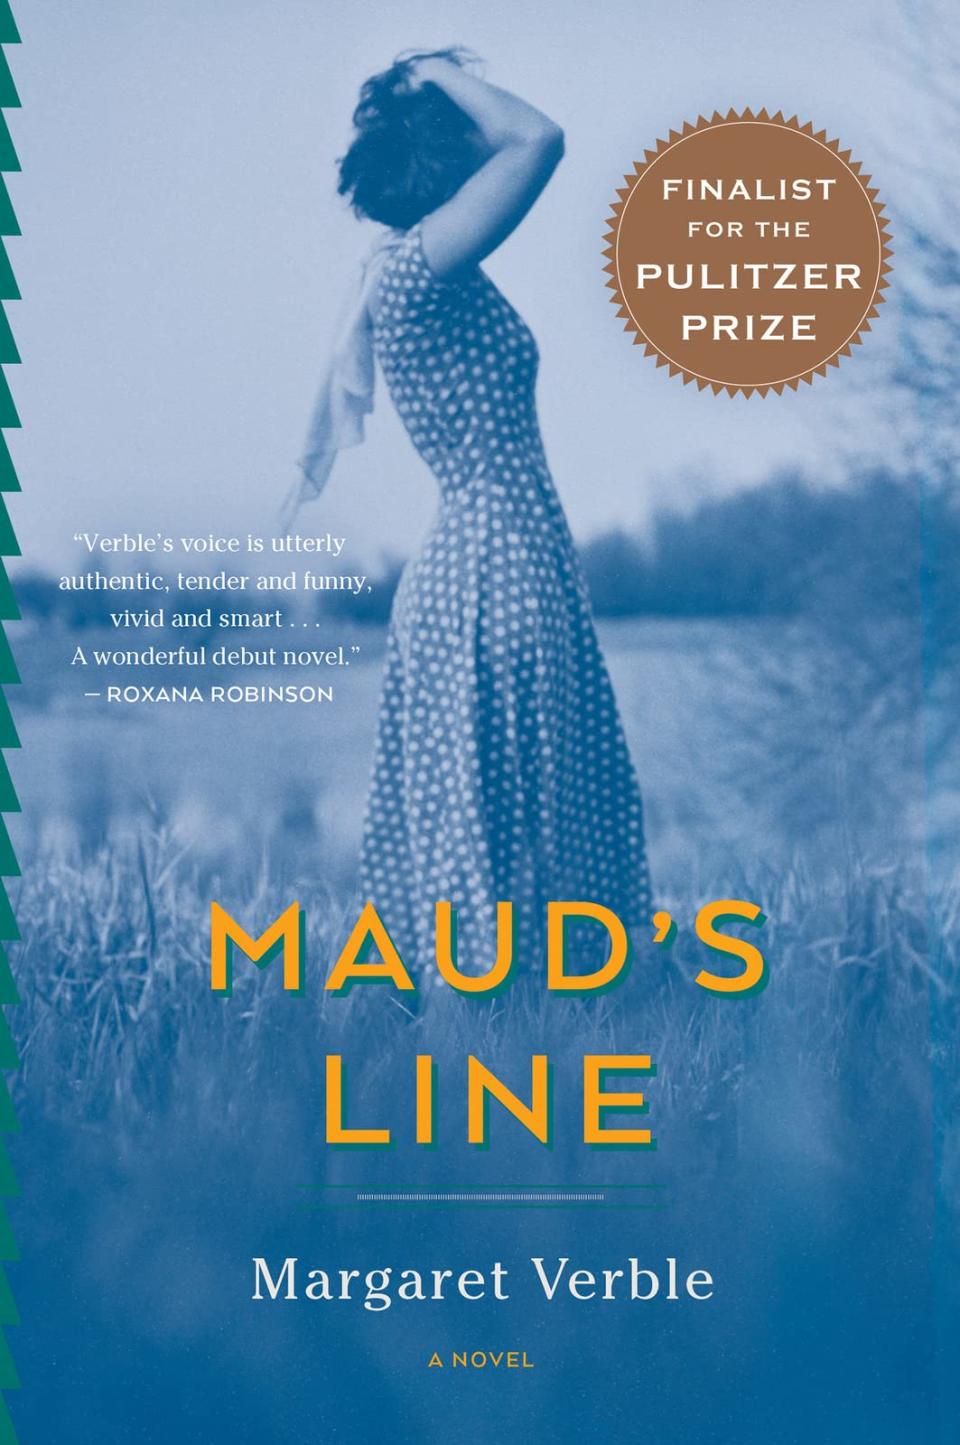 "Maud's Line"